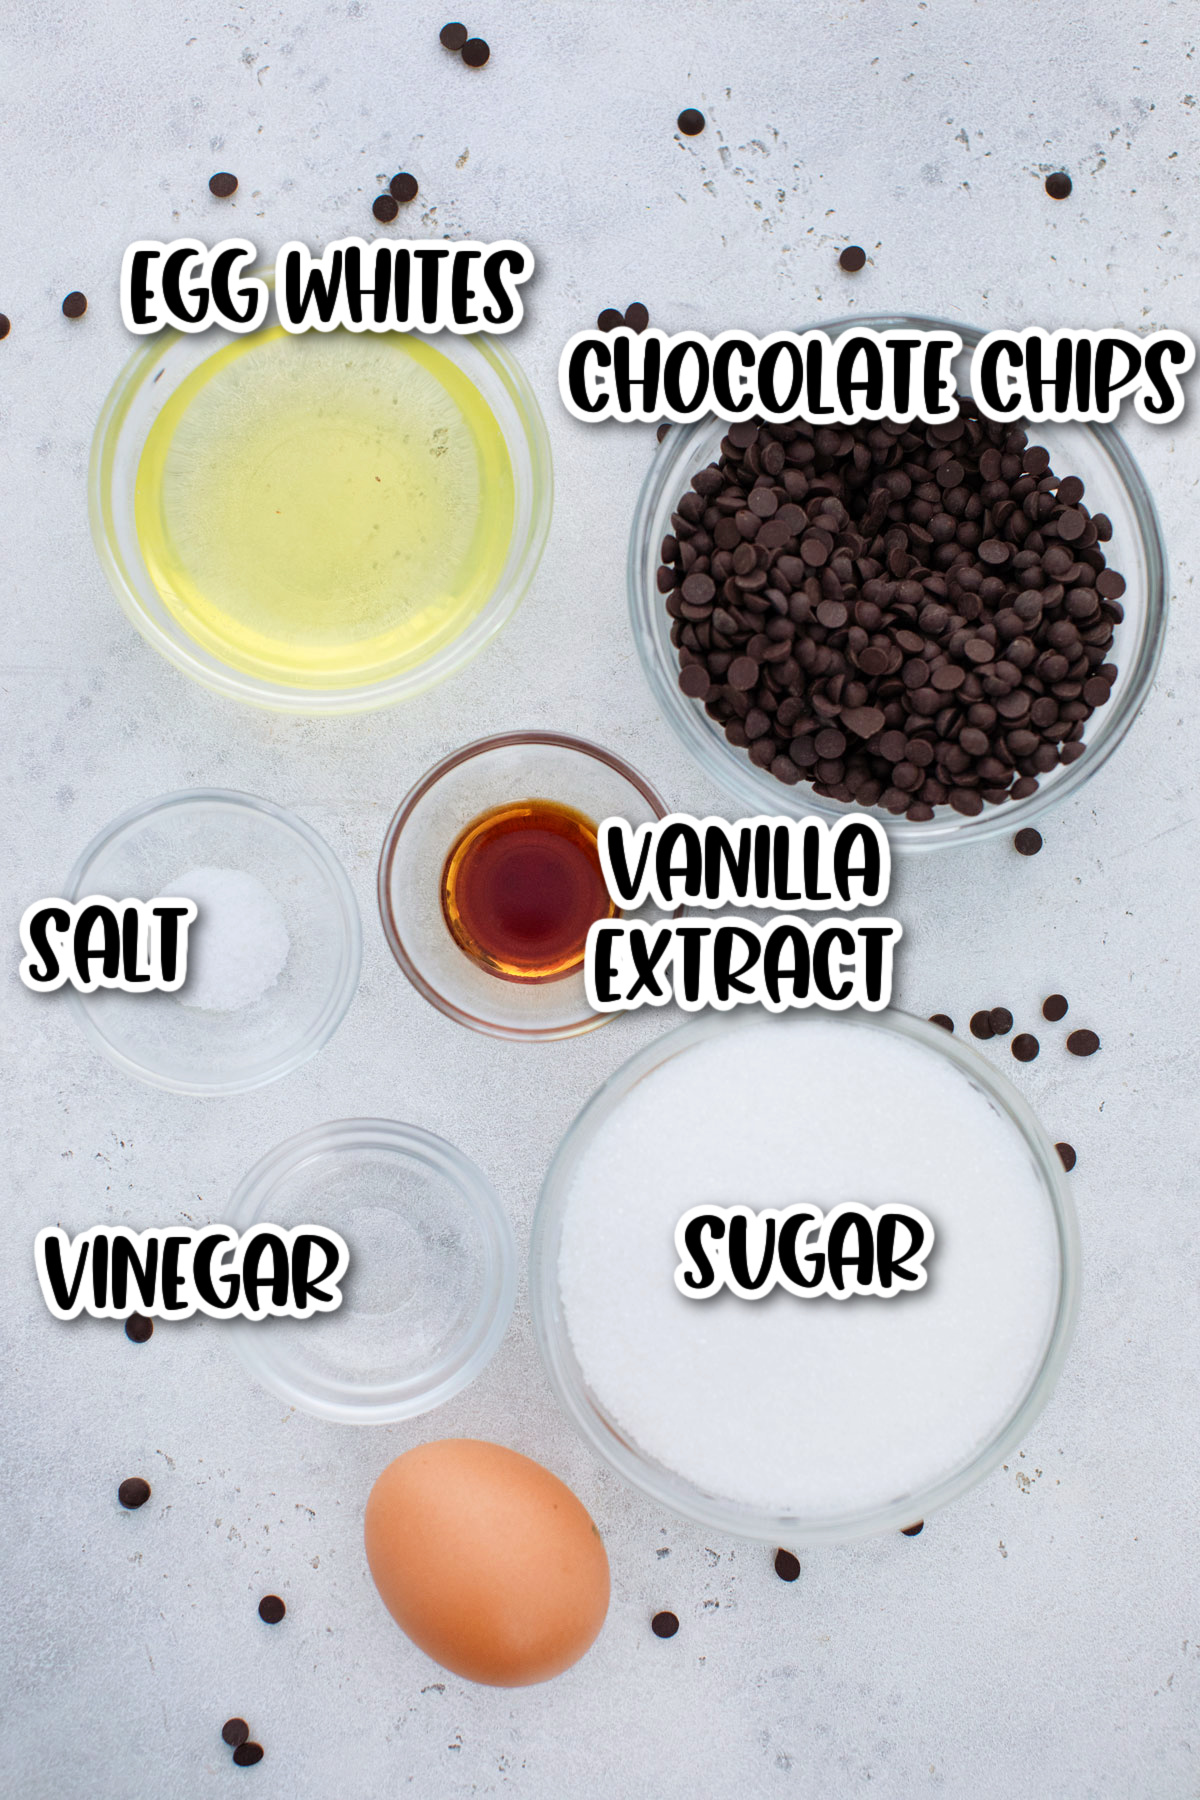 Ingredients for chocolate chip meringue cookies